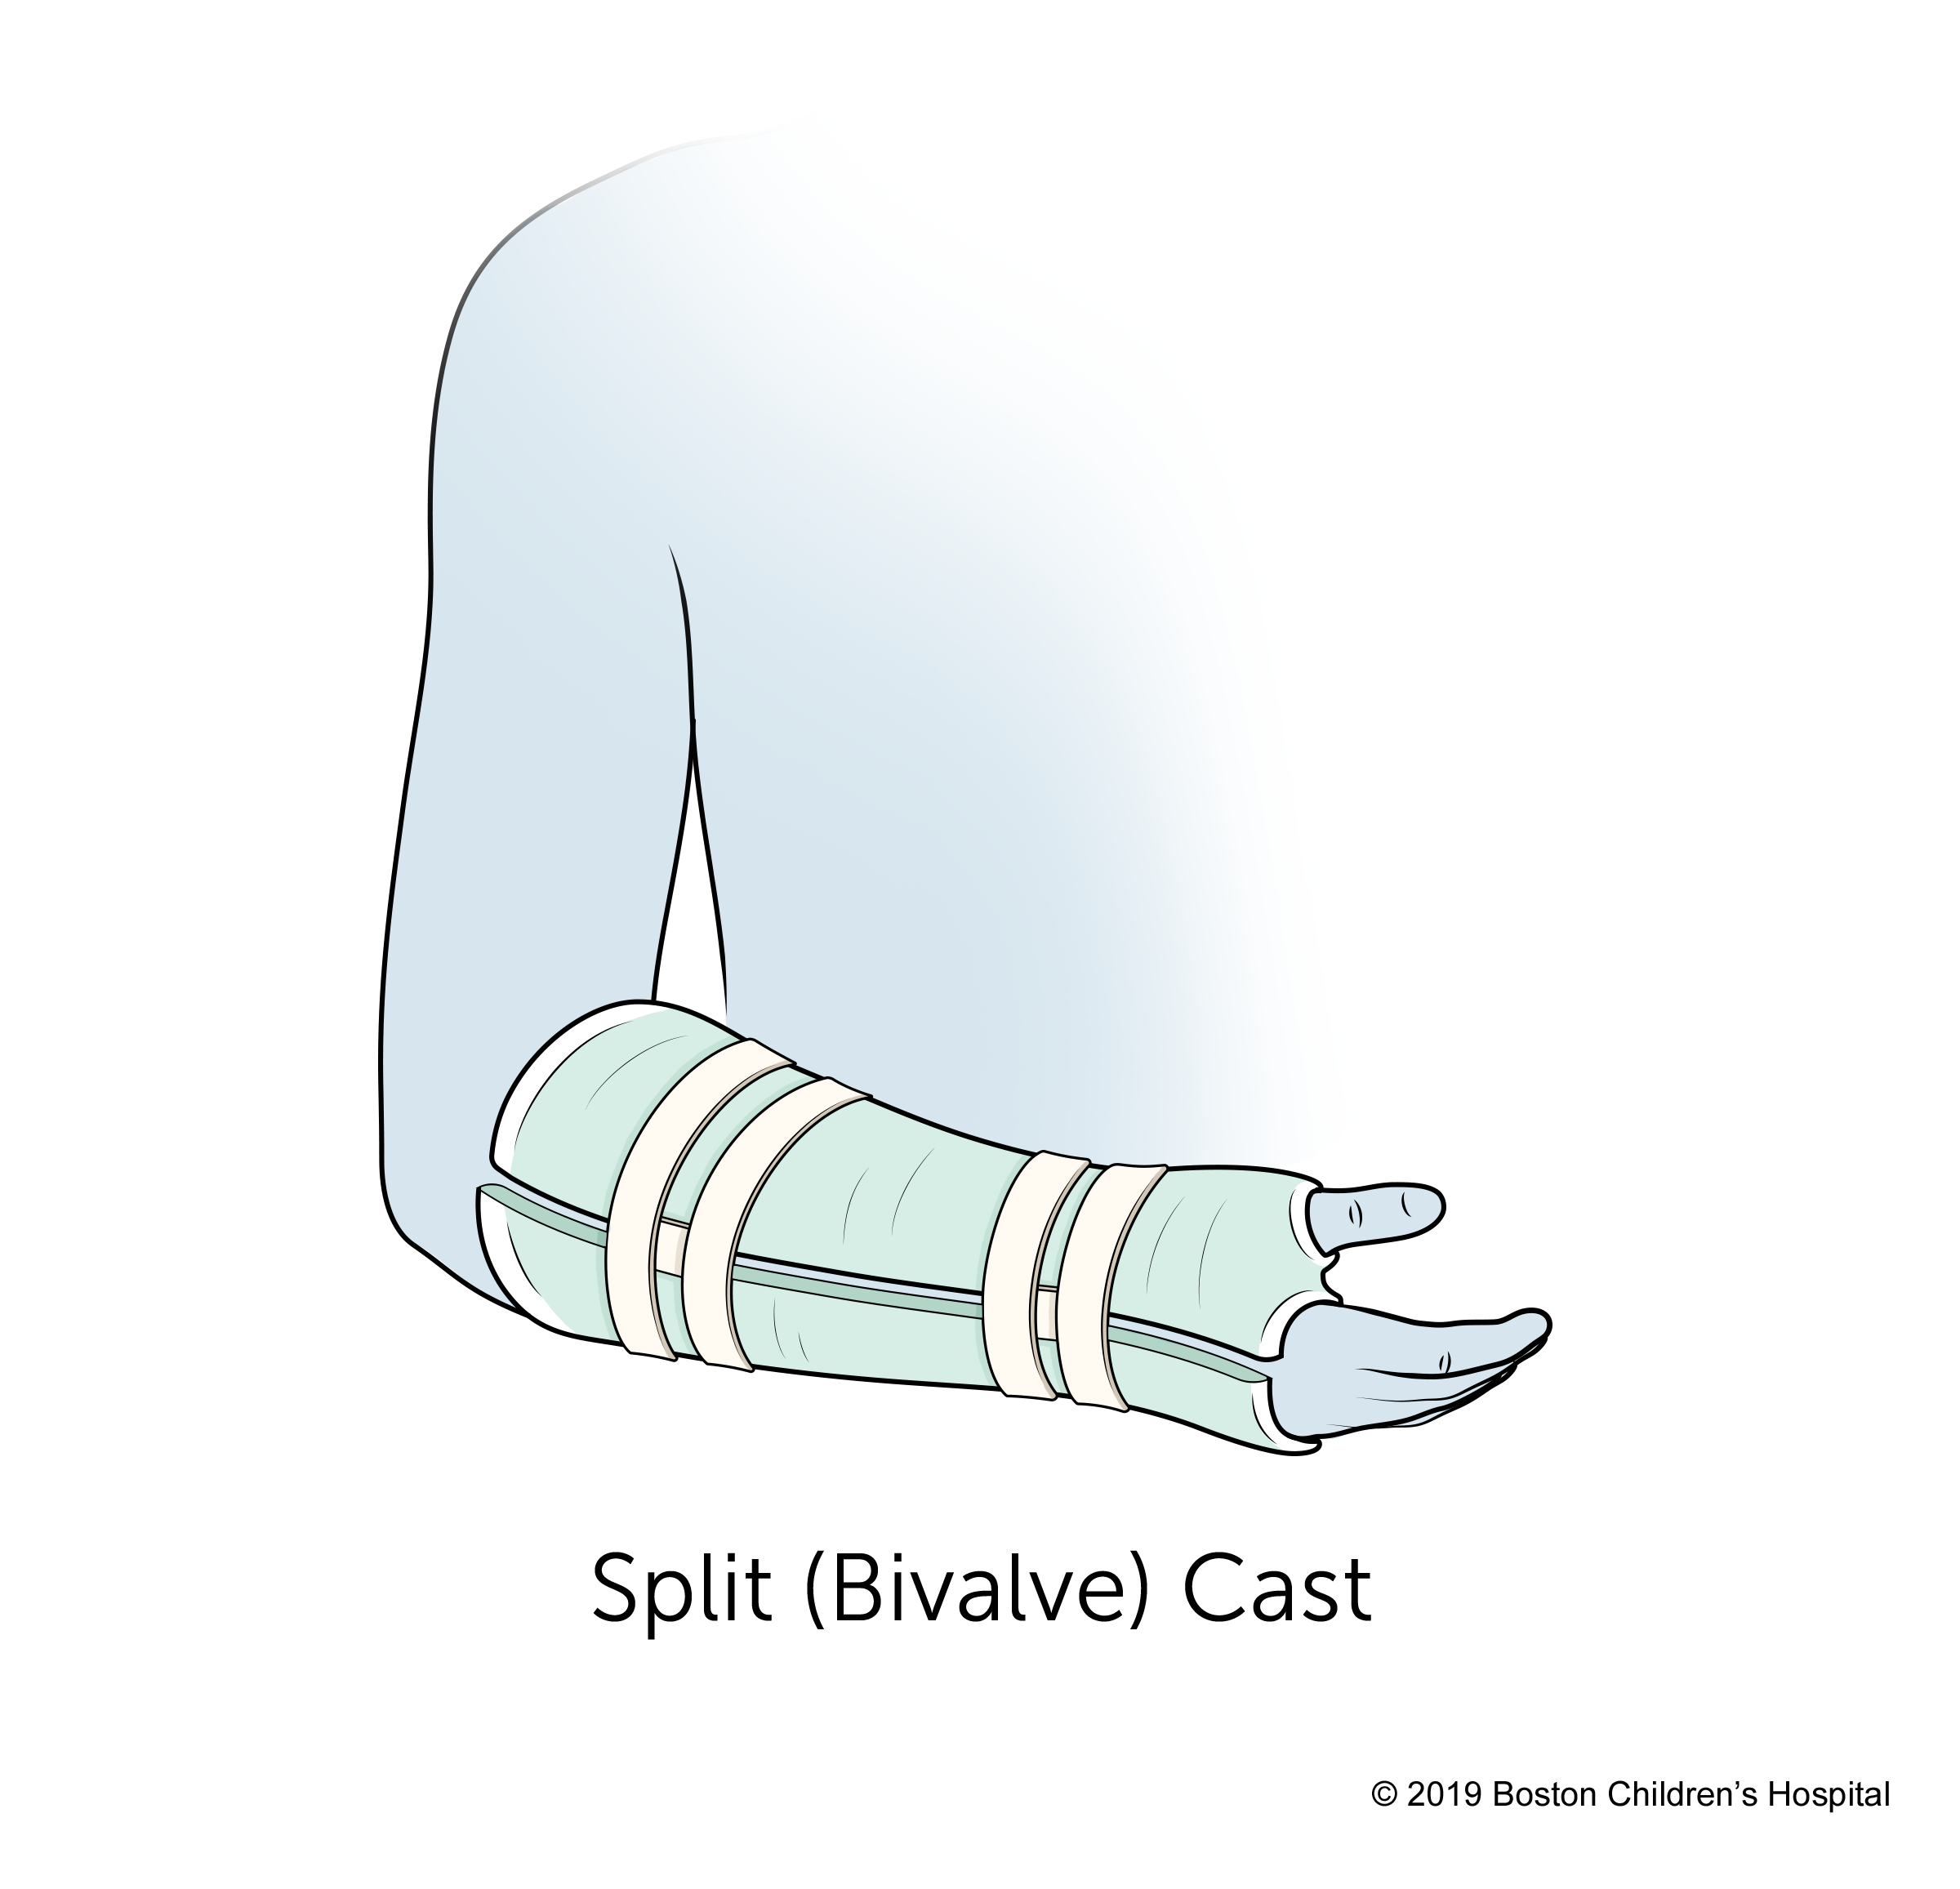 A split (bivalve) cast.